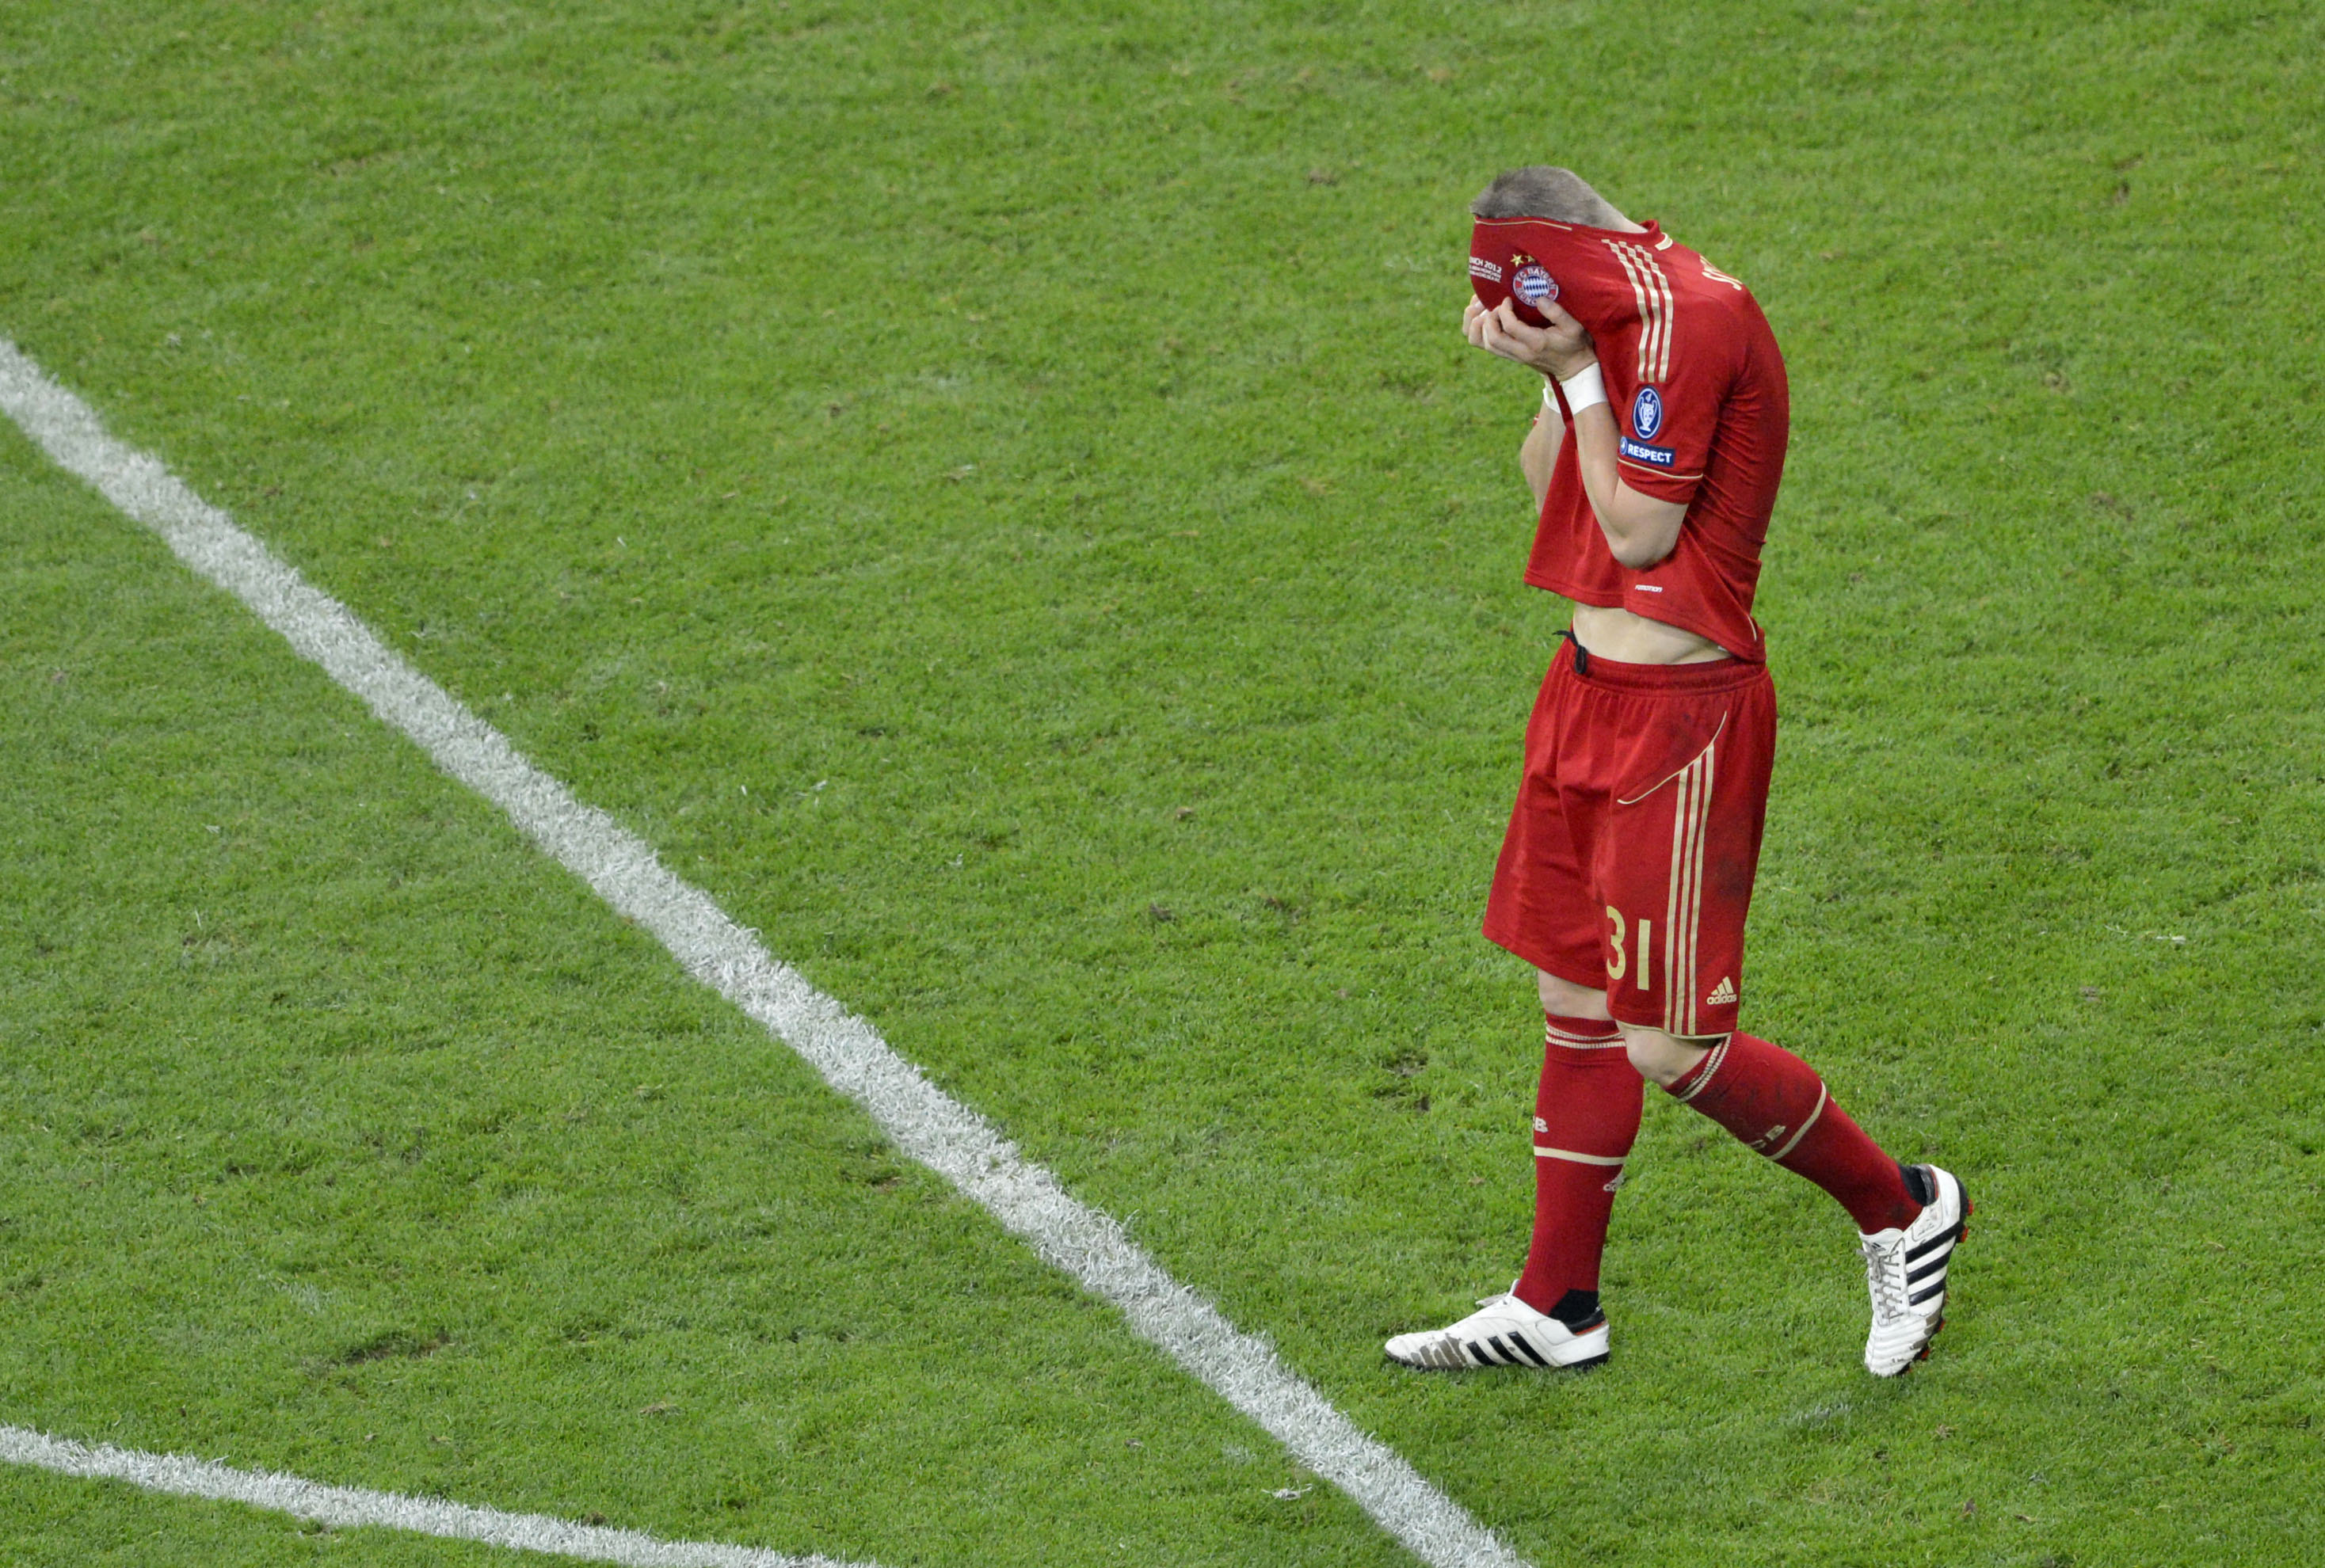 Bastian Schweinsteiger missade Bayerns sista straff mot Chelsea men ska inte påverkas av det i EM enligt Podolski.